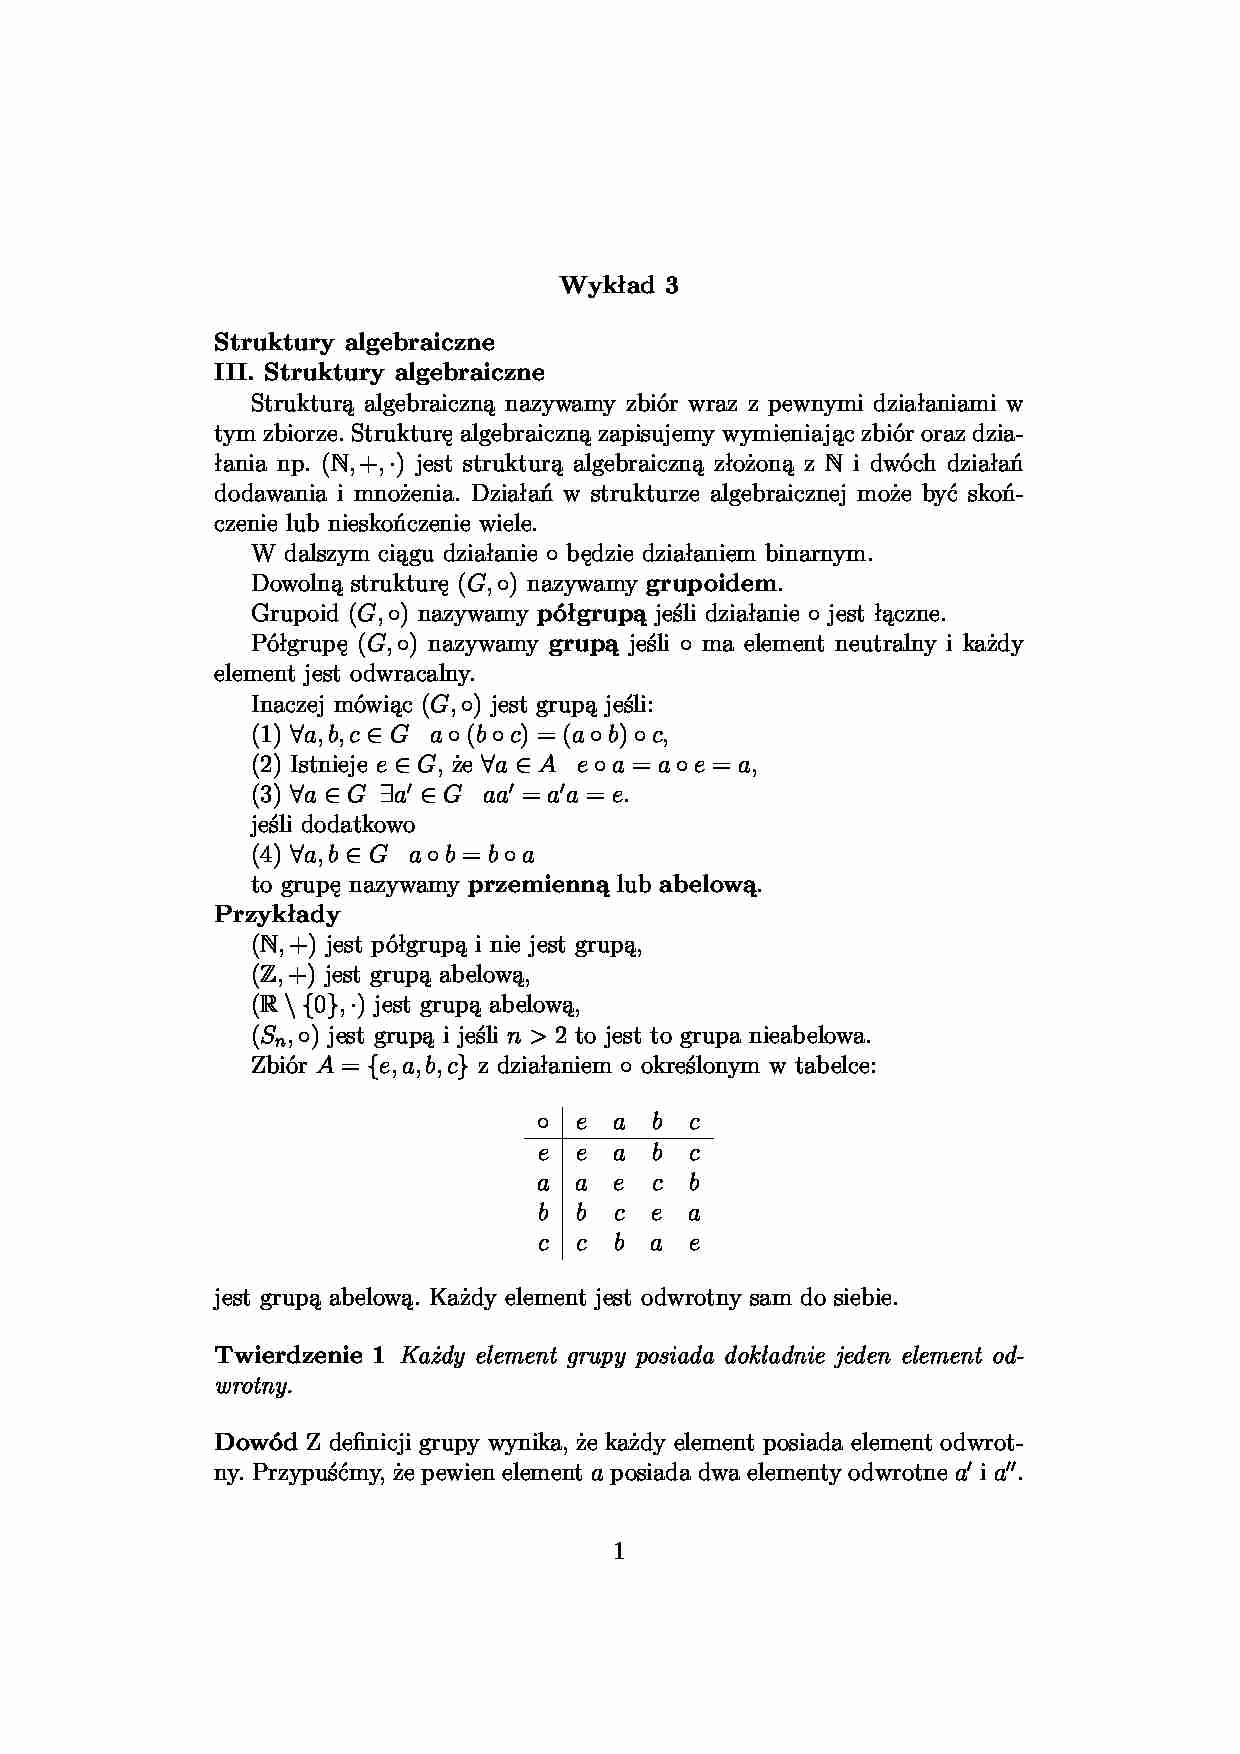 Struktury algebraiczne - algebra - strona 1